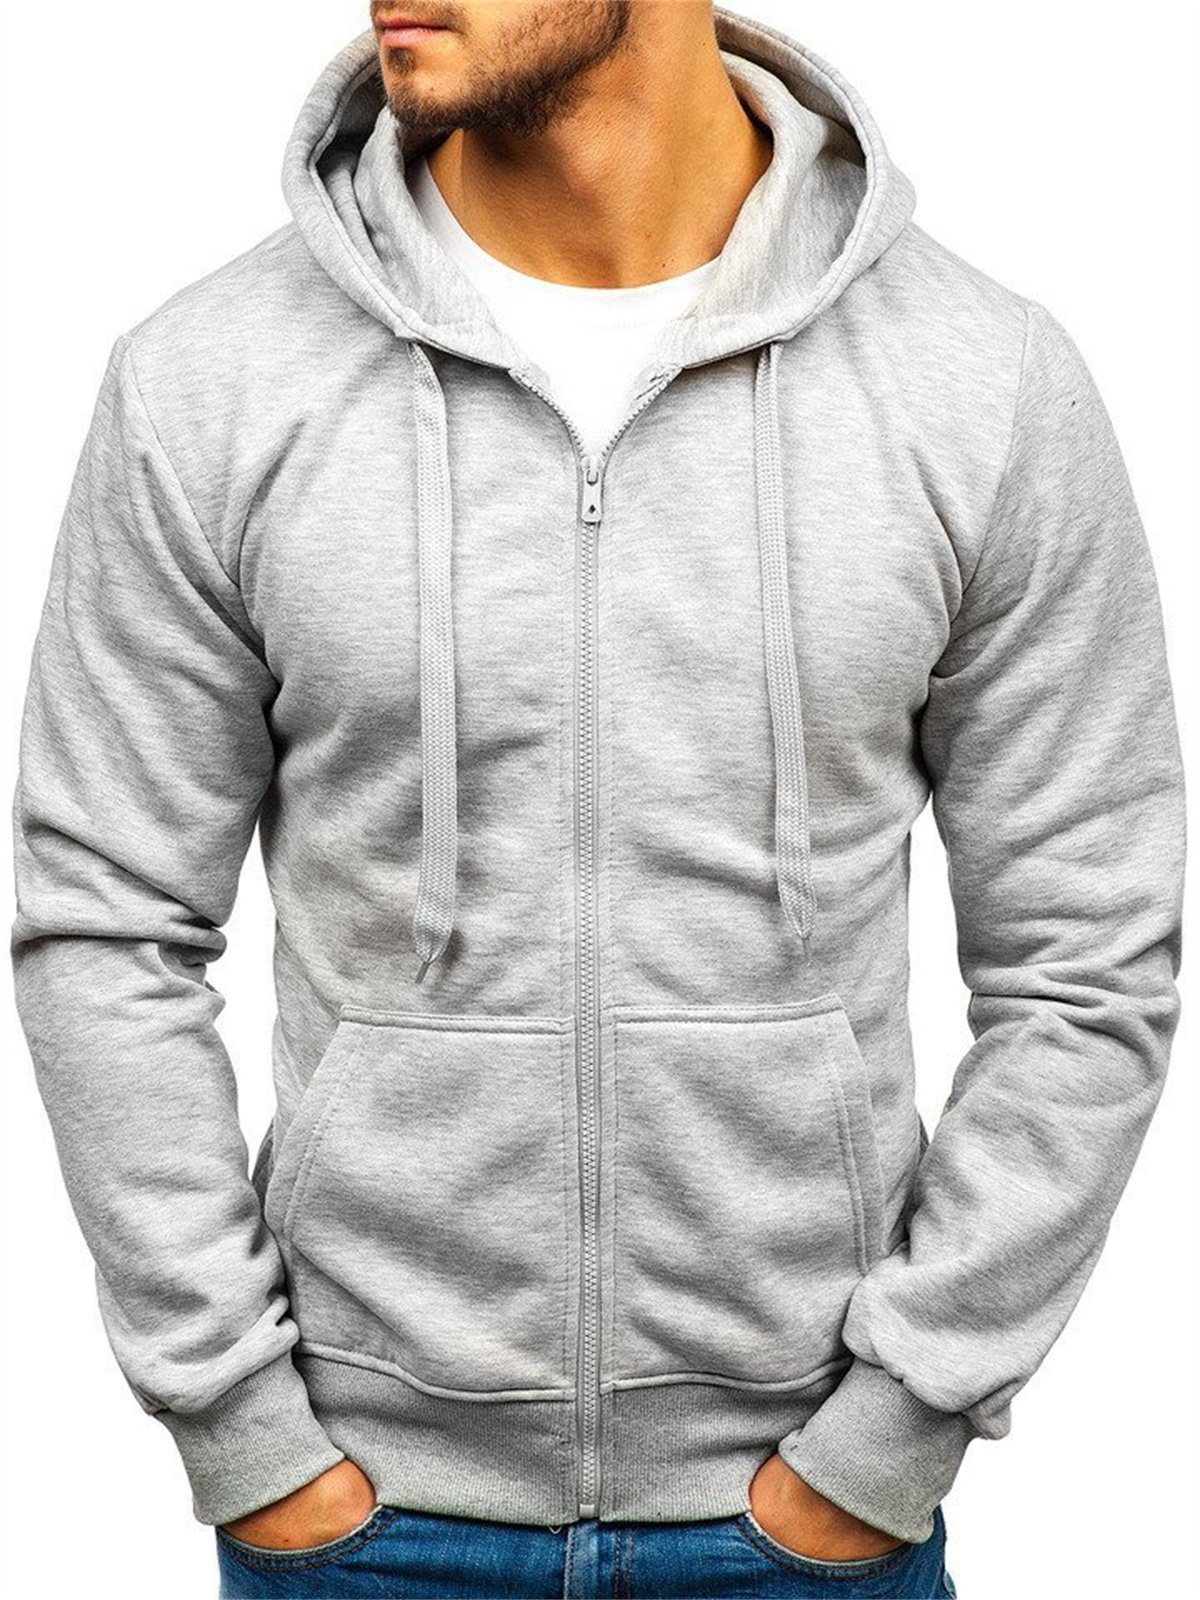 Discaver Sweatshirt Lockeres, atmungsaktives Freizeit-Sweatshirt für Herren grau